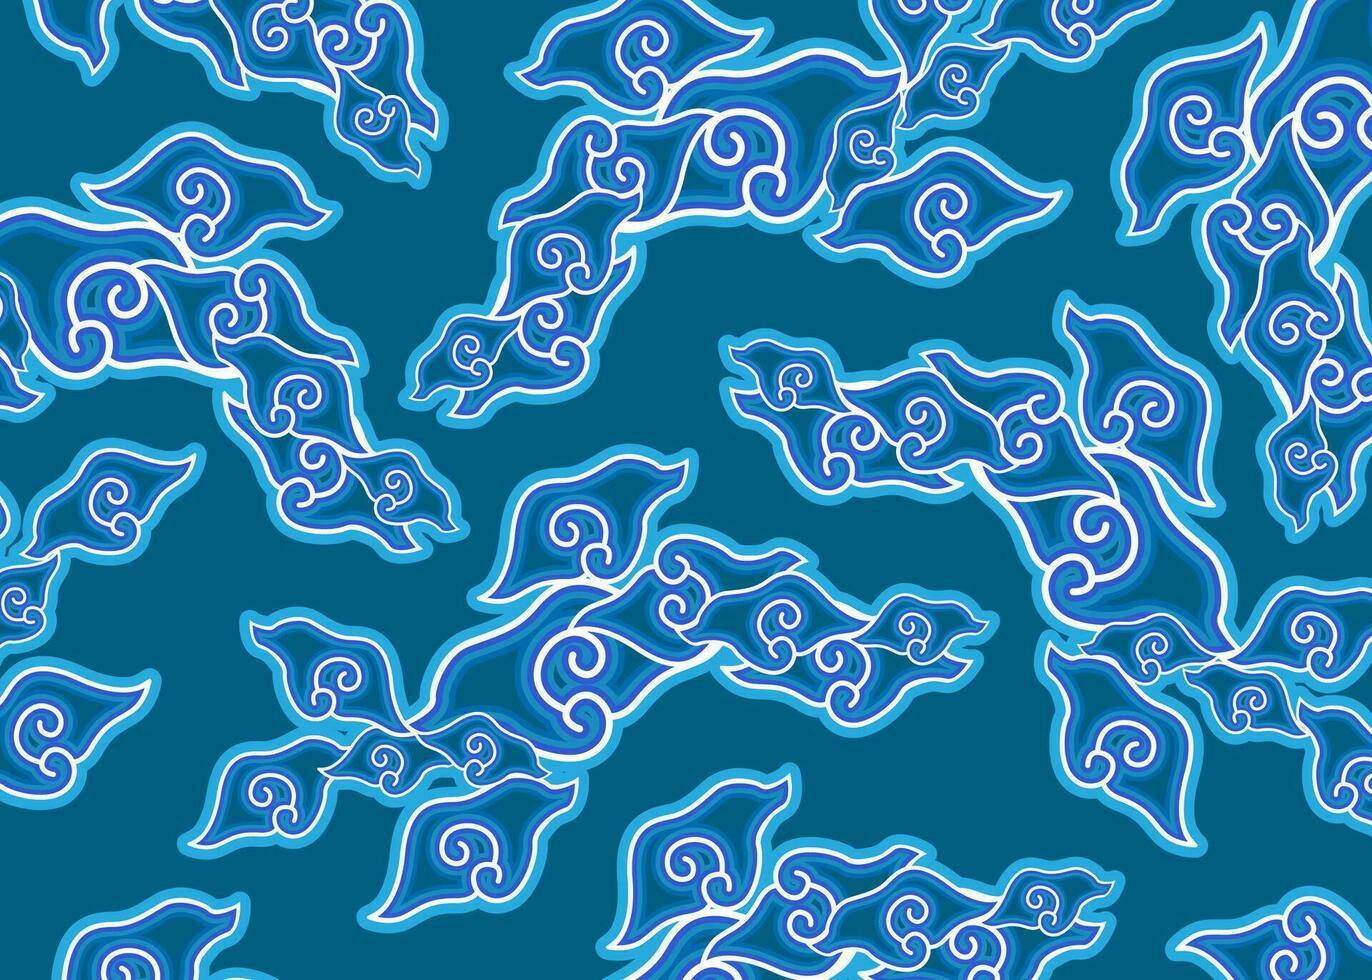 Mega mendung Motiv, Batik Motiv typisch von Westen Java Indonesien, gebogen Linie Muster mit Wolke Objekte, mit Entwicklungen und verschiedene künstlerisch Farben, Ethnie Muster Textil- asiatisch Hintergrund Ornament vektor